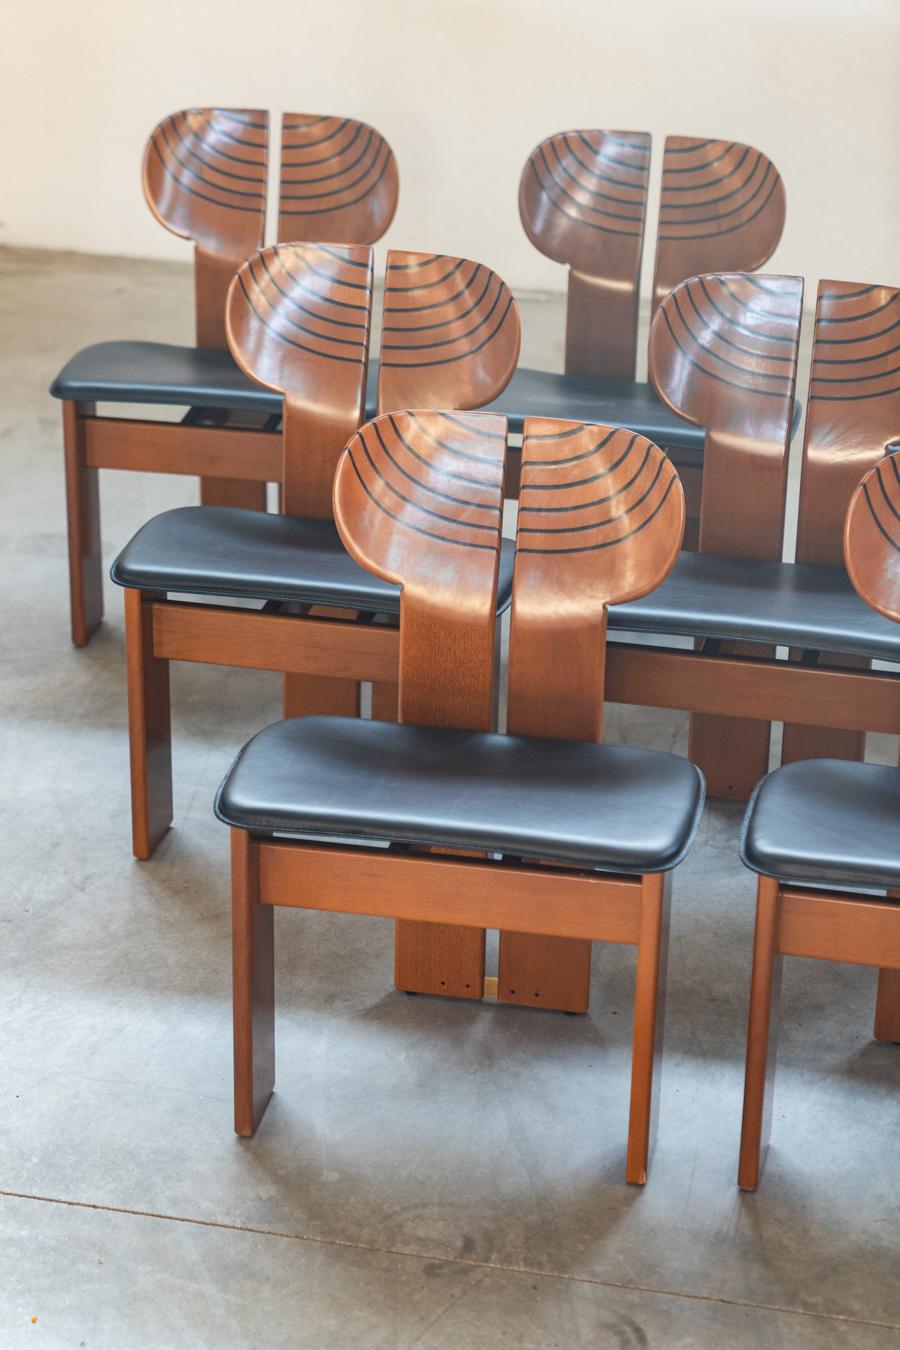 Set 12 Stühle Afra & Tobia Scarpa mod. Afrika - Gruppo Unico, 80/90
Stil
Weinlese
Entwurfszeitraum
1980 - 1989
Produktionszeitraum
1980 - 1989
Jahr der Herstellung
1980
Land der Produktion
Italien
Schöpfer
Scarpa,